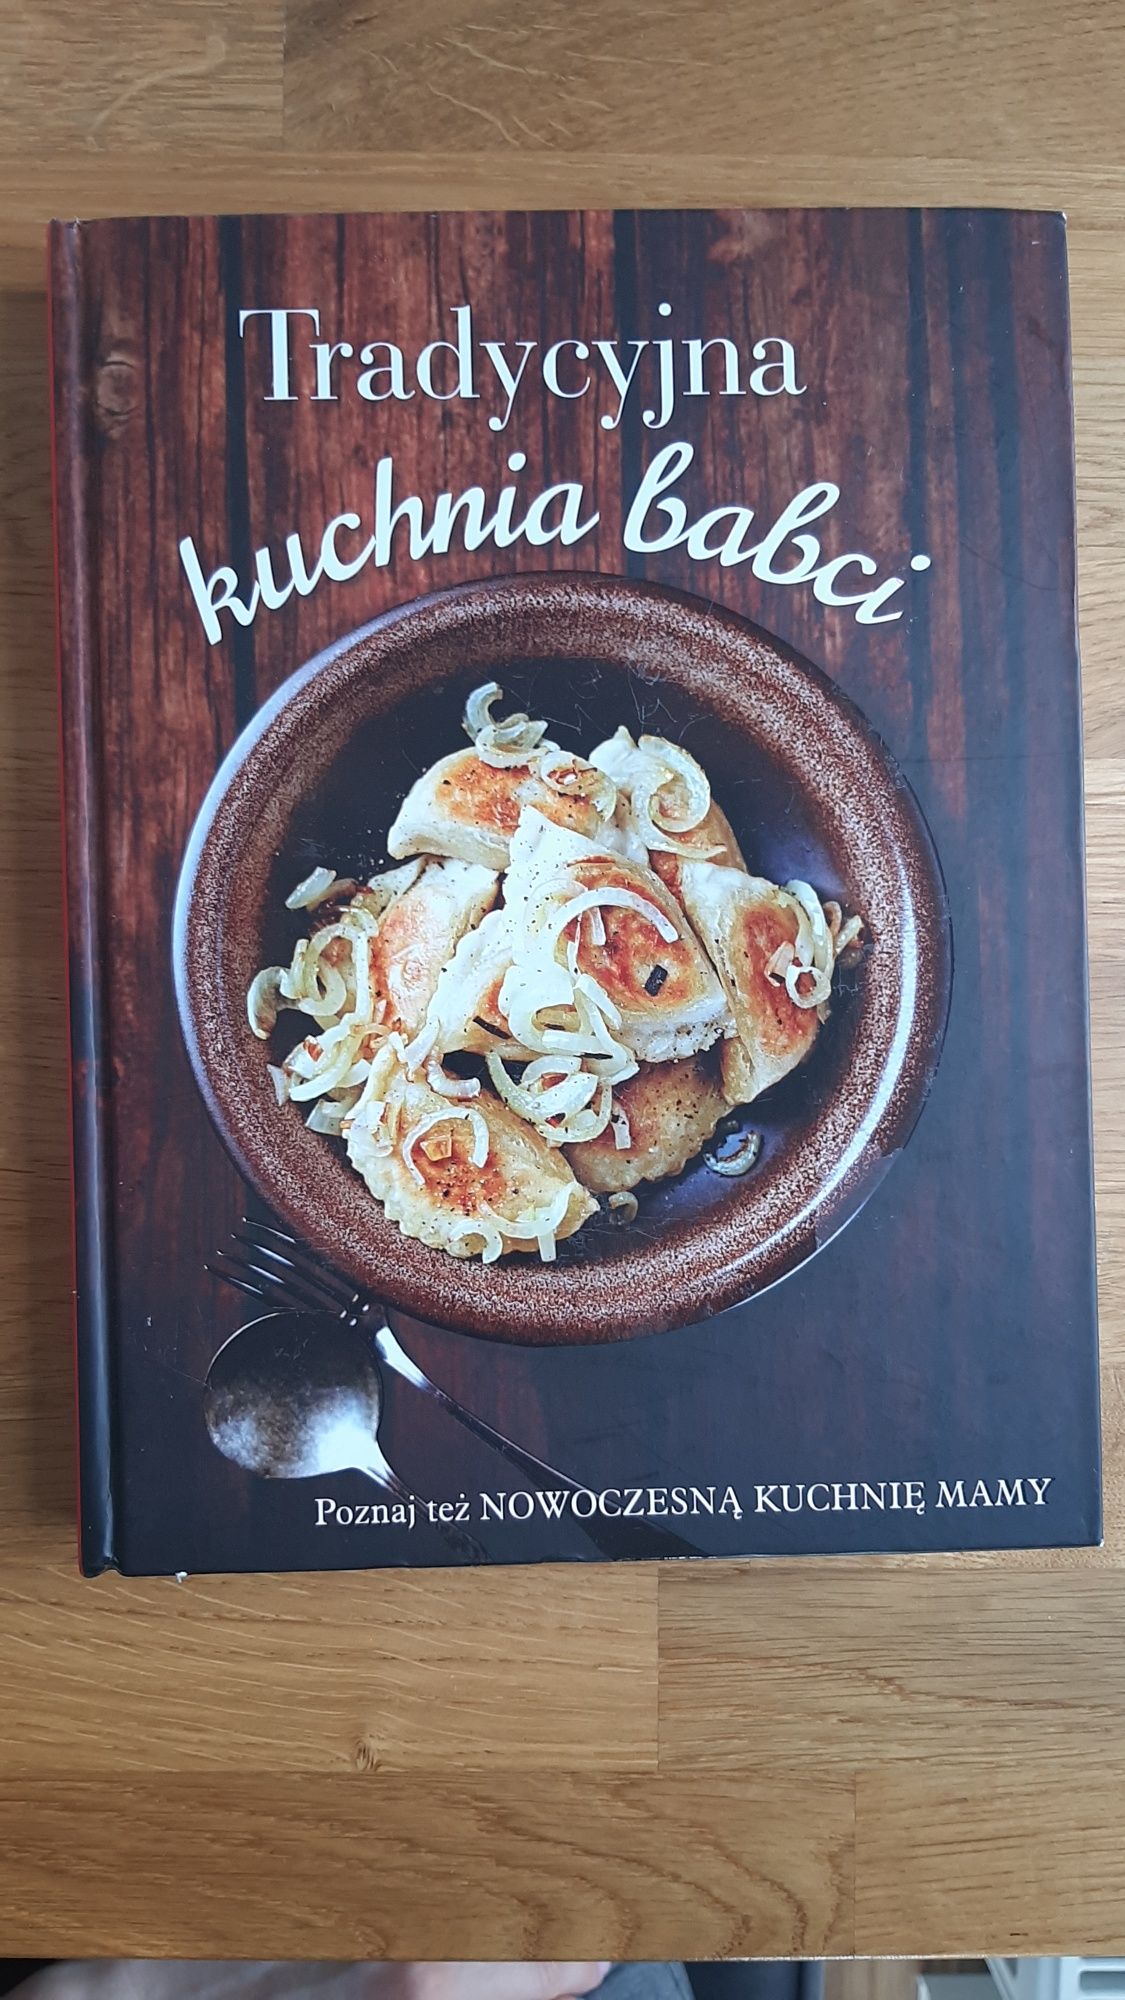 Książka "Tradycyjna kuchnia babci/nowoczesna kuchnia mamy"